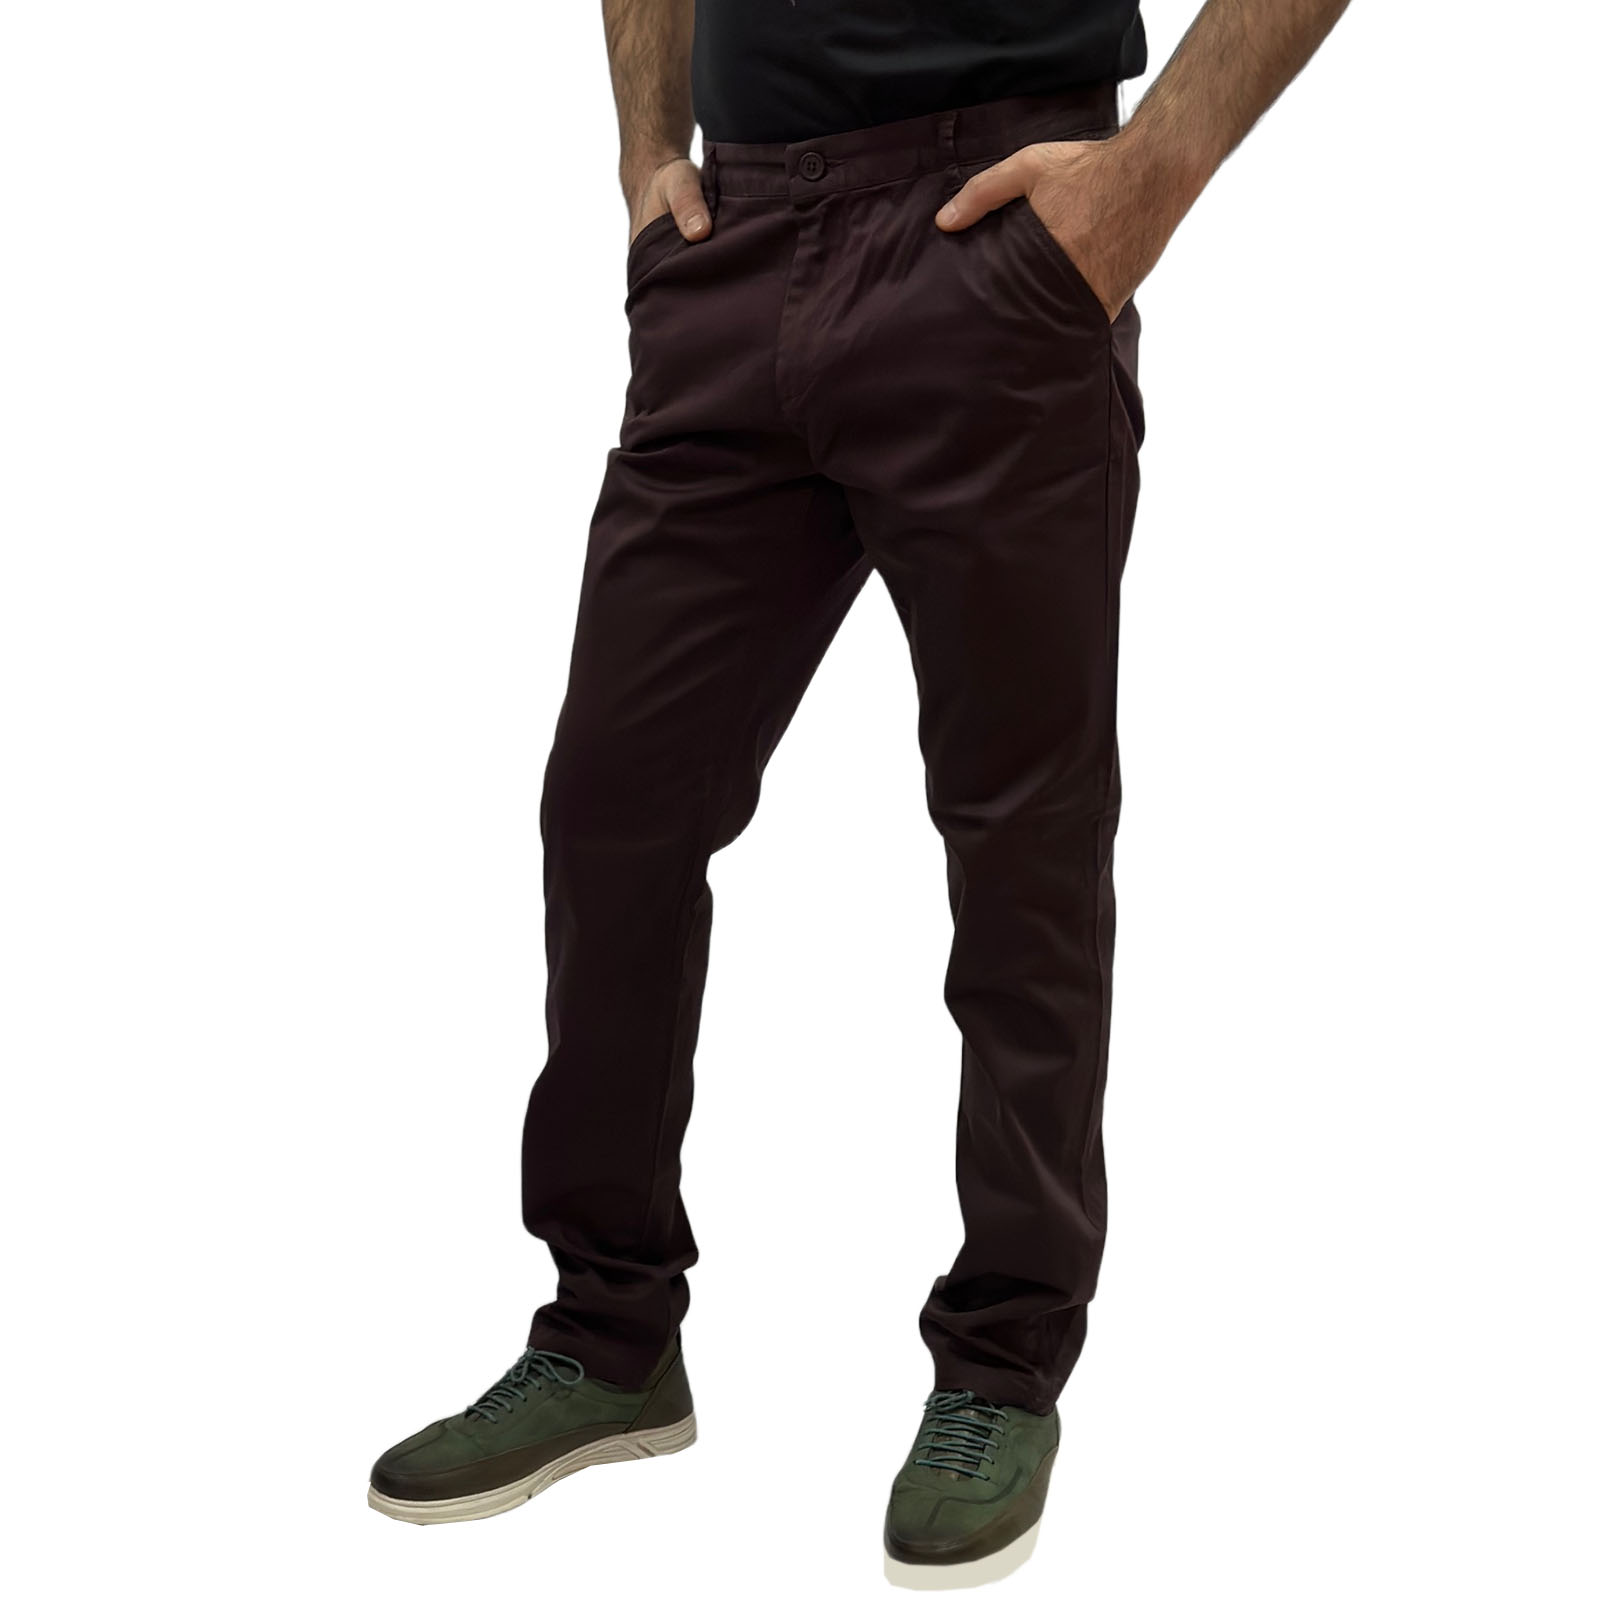 Тёмно-бордовые мужские брюки от Connor - изготовлены из хлопка 98% с добавлением эластана 2% №18